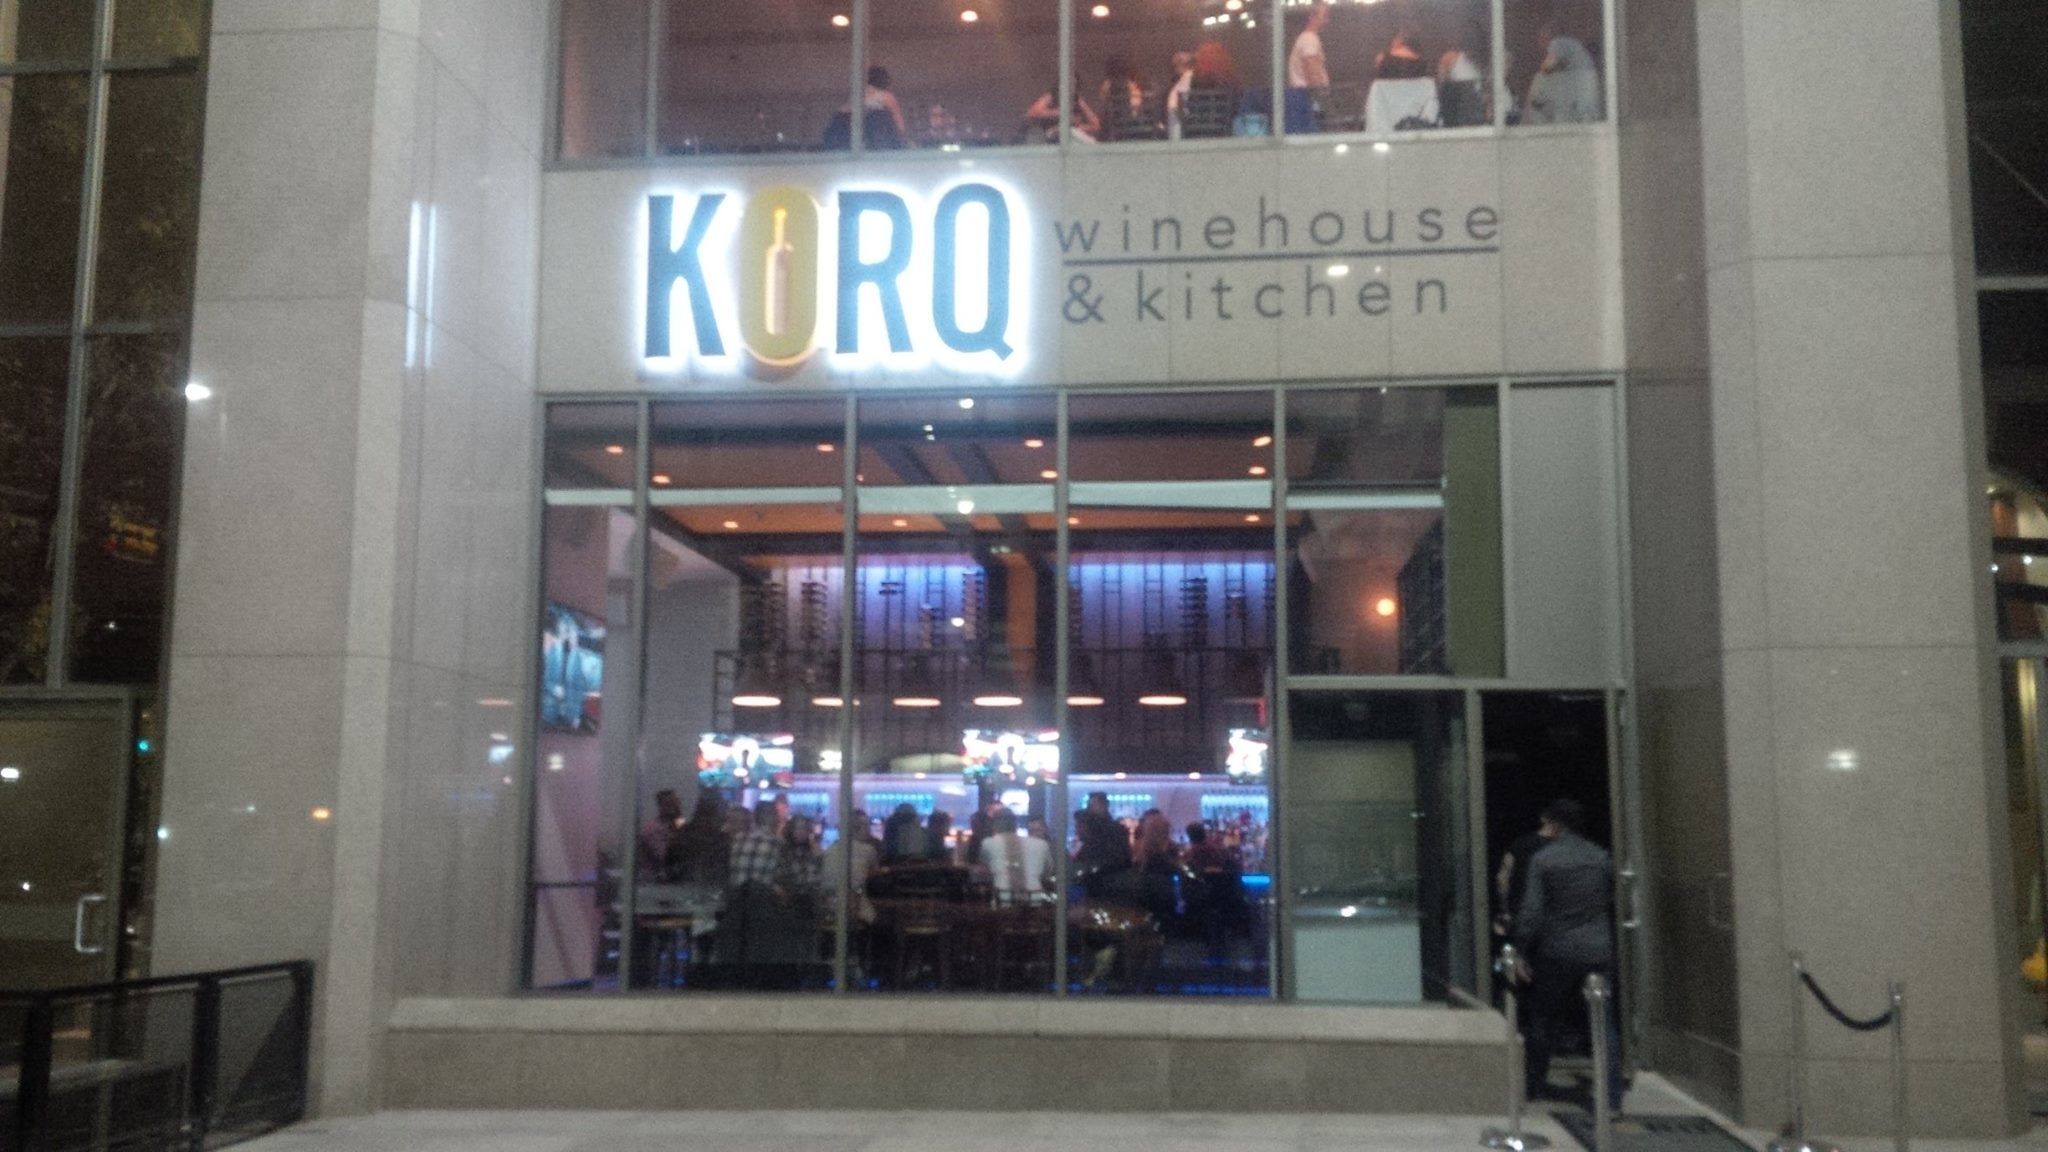 Korq Winehouse & Kitchen